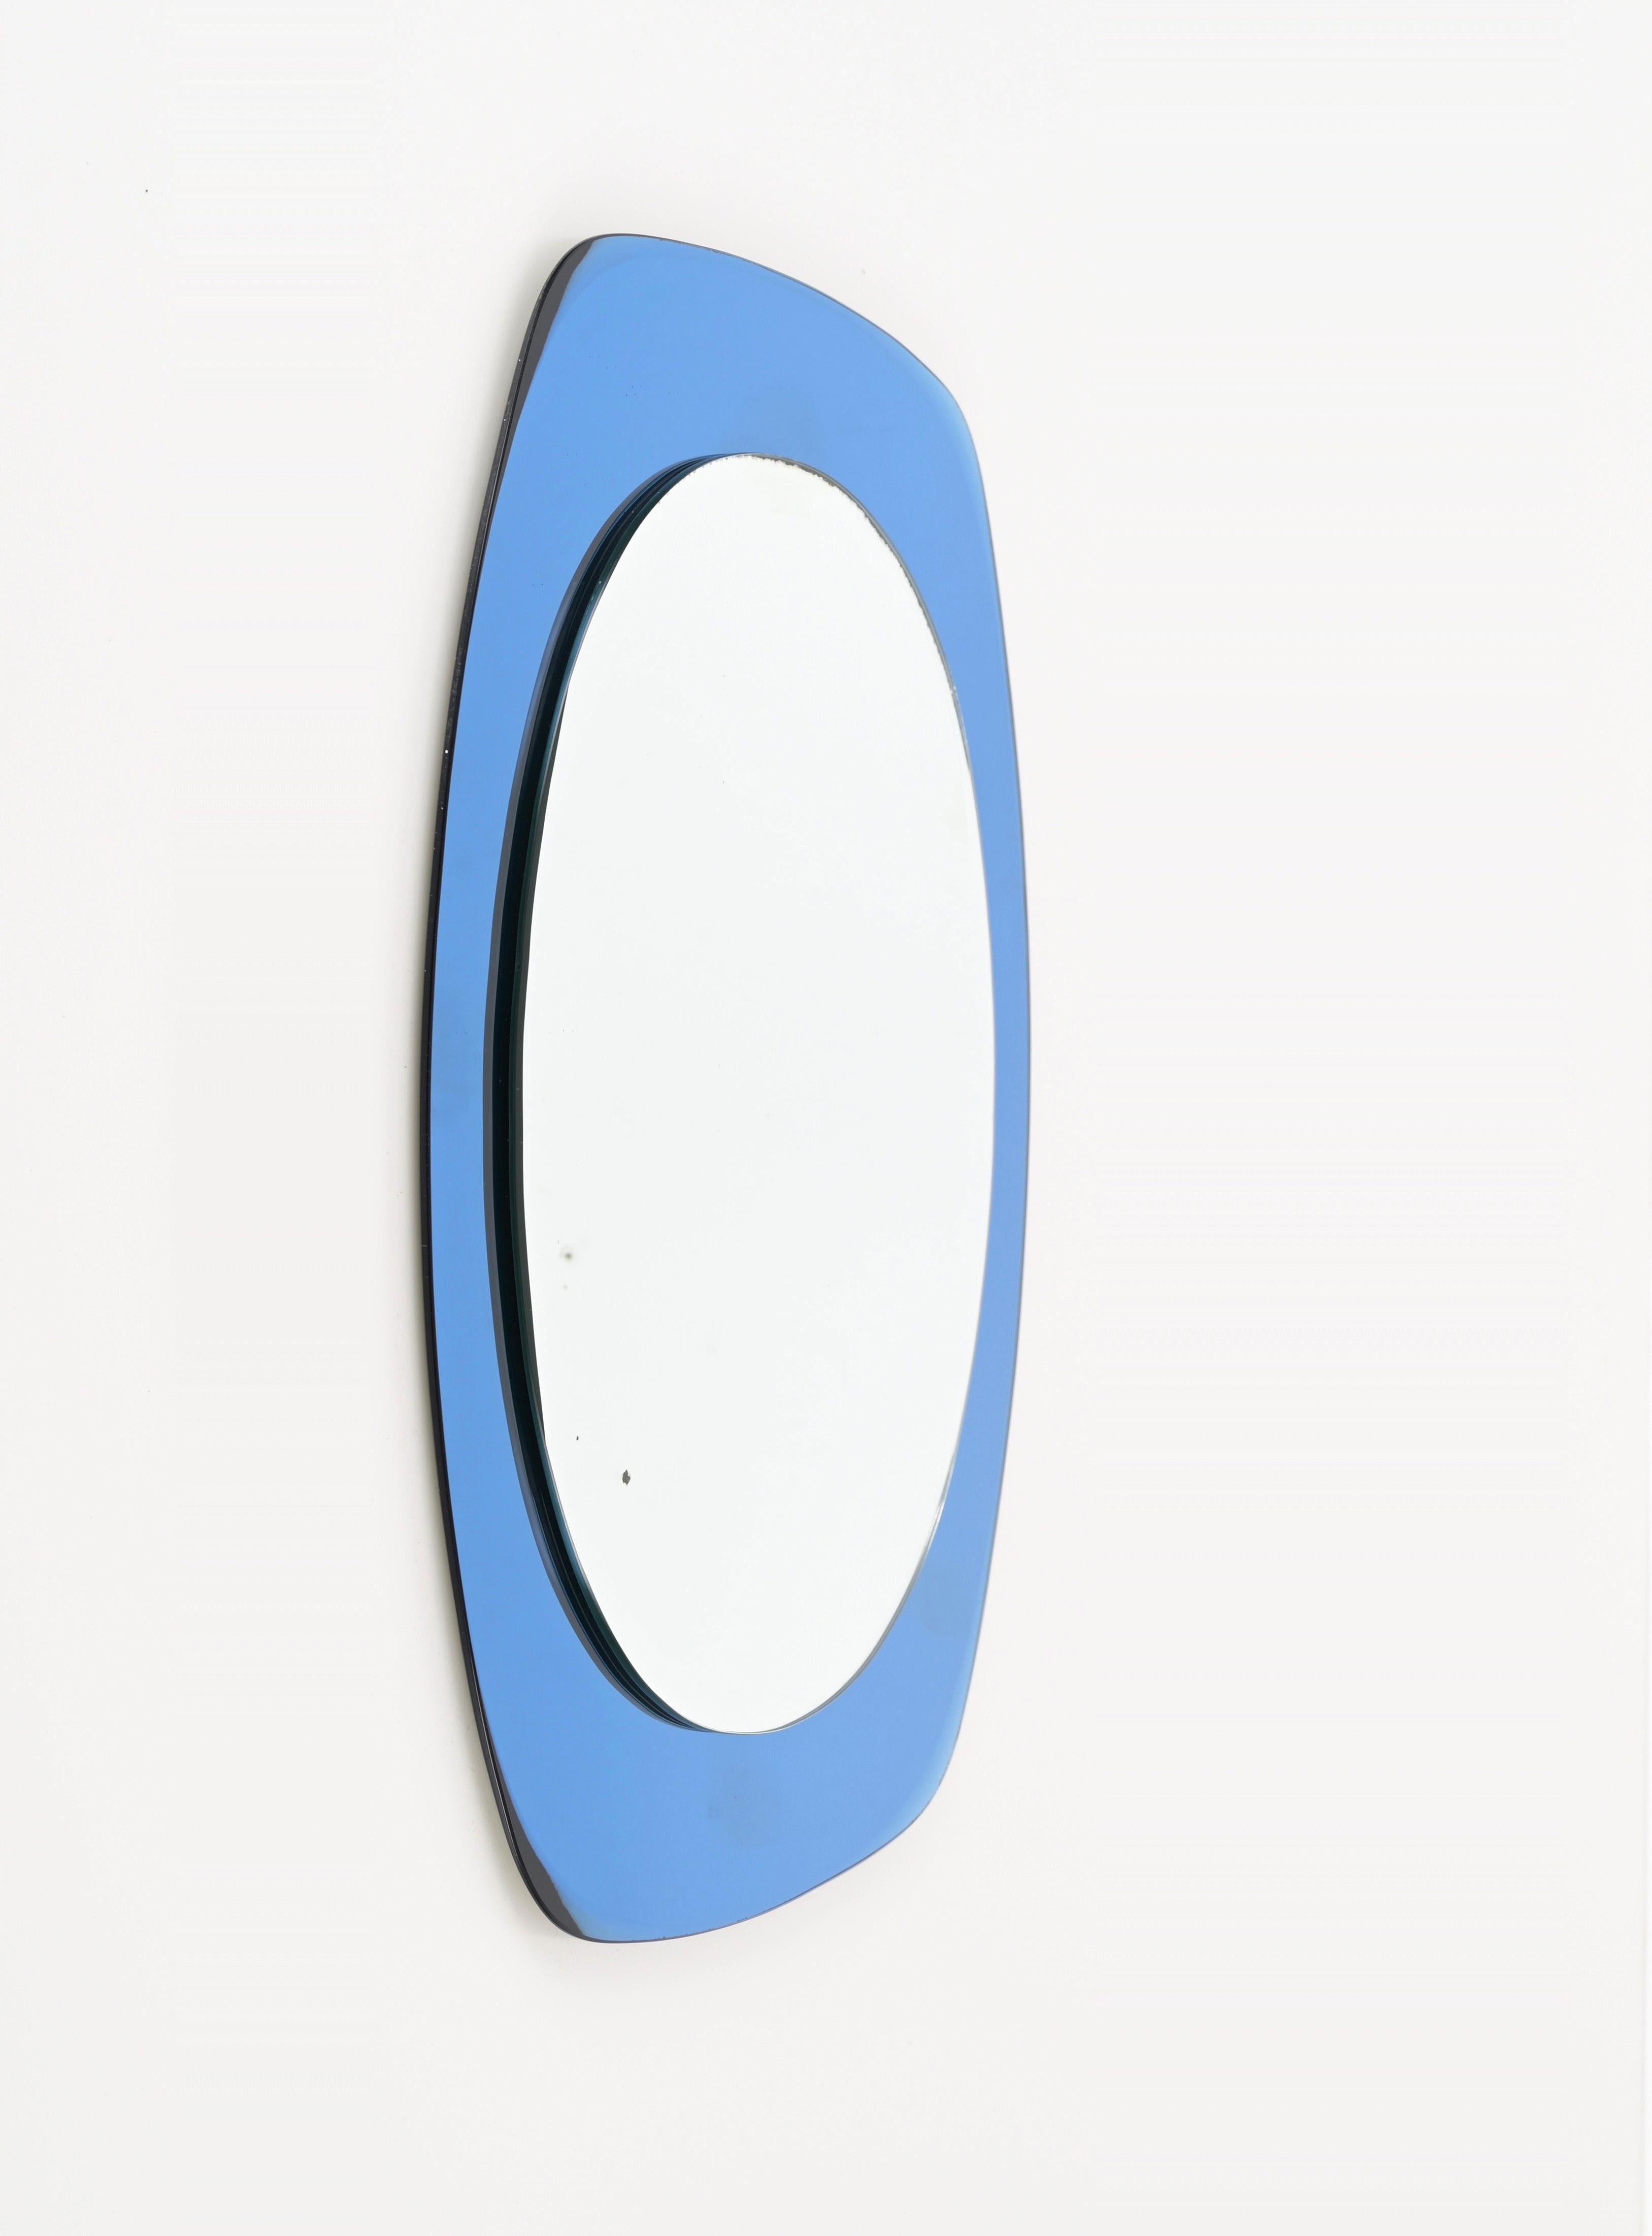 Wunderschöner doppelstöckiger Spiegel aus der Mitte des Jahrhunderts mit einem atemberaubenden blauen Spiegelglasrahmen. Dieses wunderschöne Stück wurde in den 1960er Jahren in Italien von Crystal Art hergestellt.

Der blaue, abgeschrägte